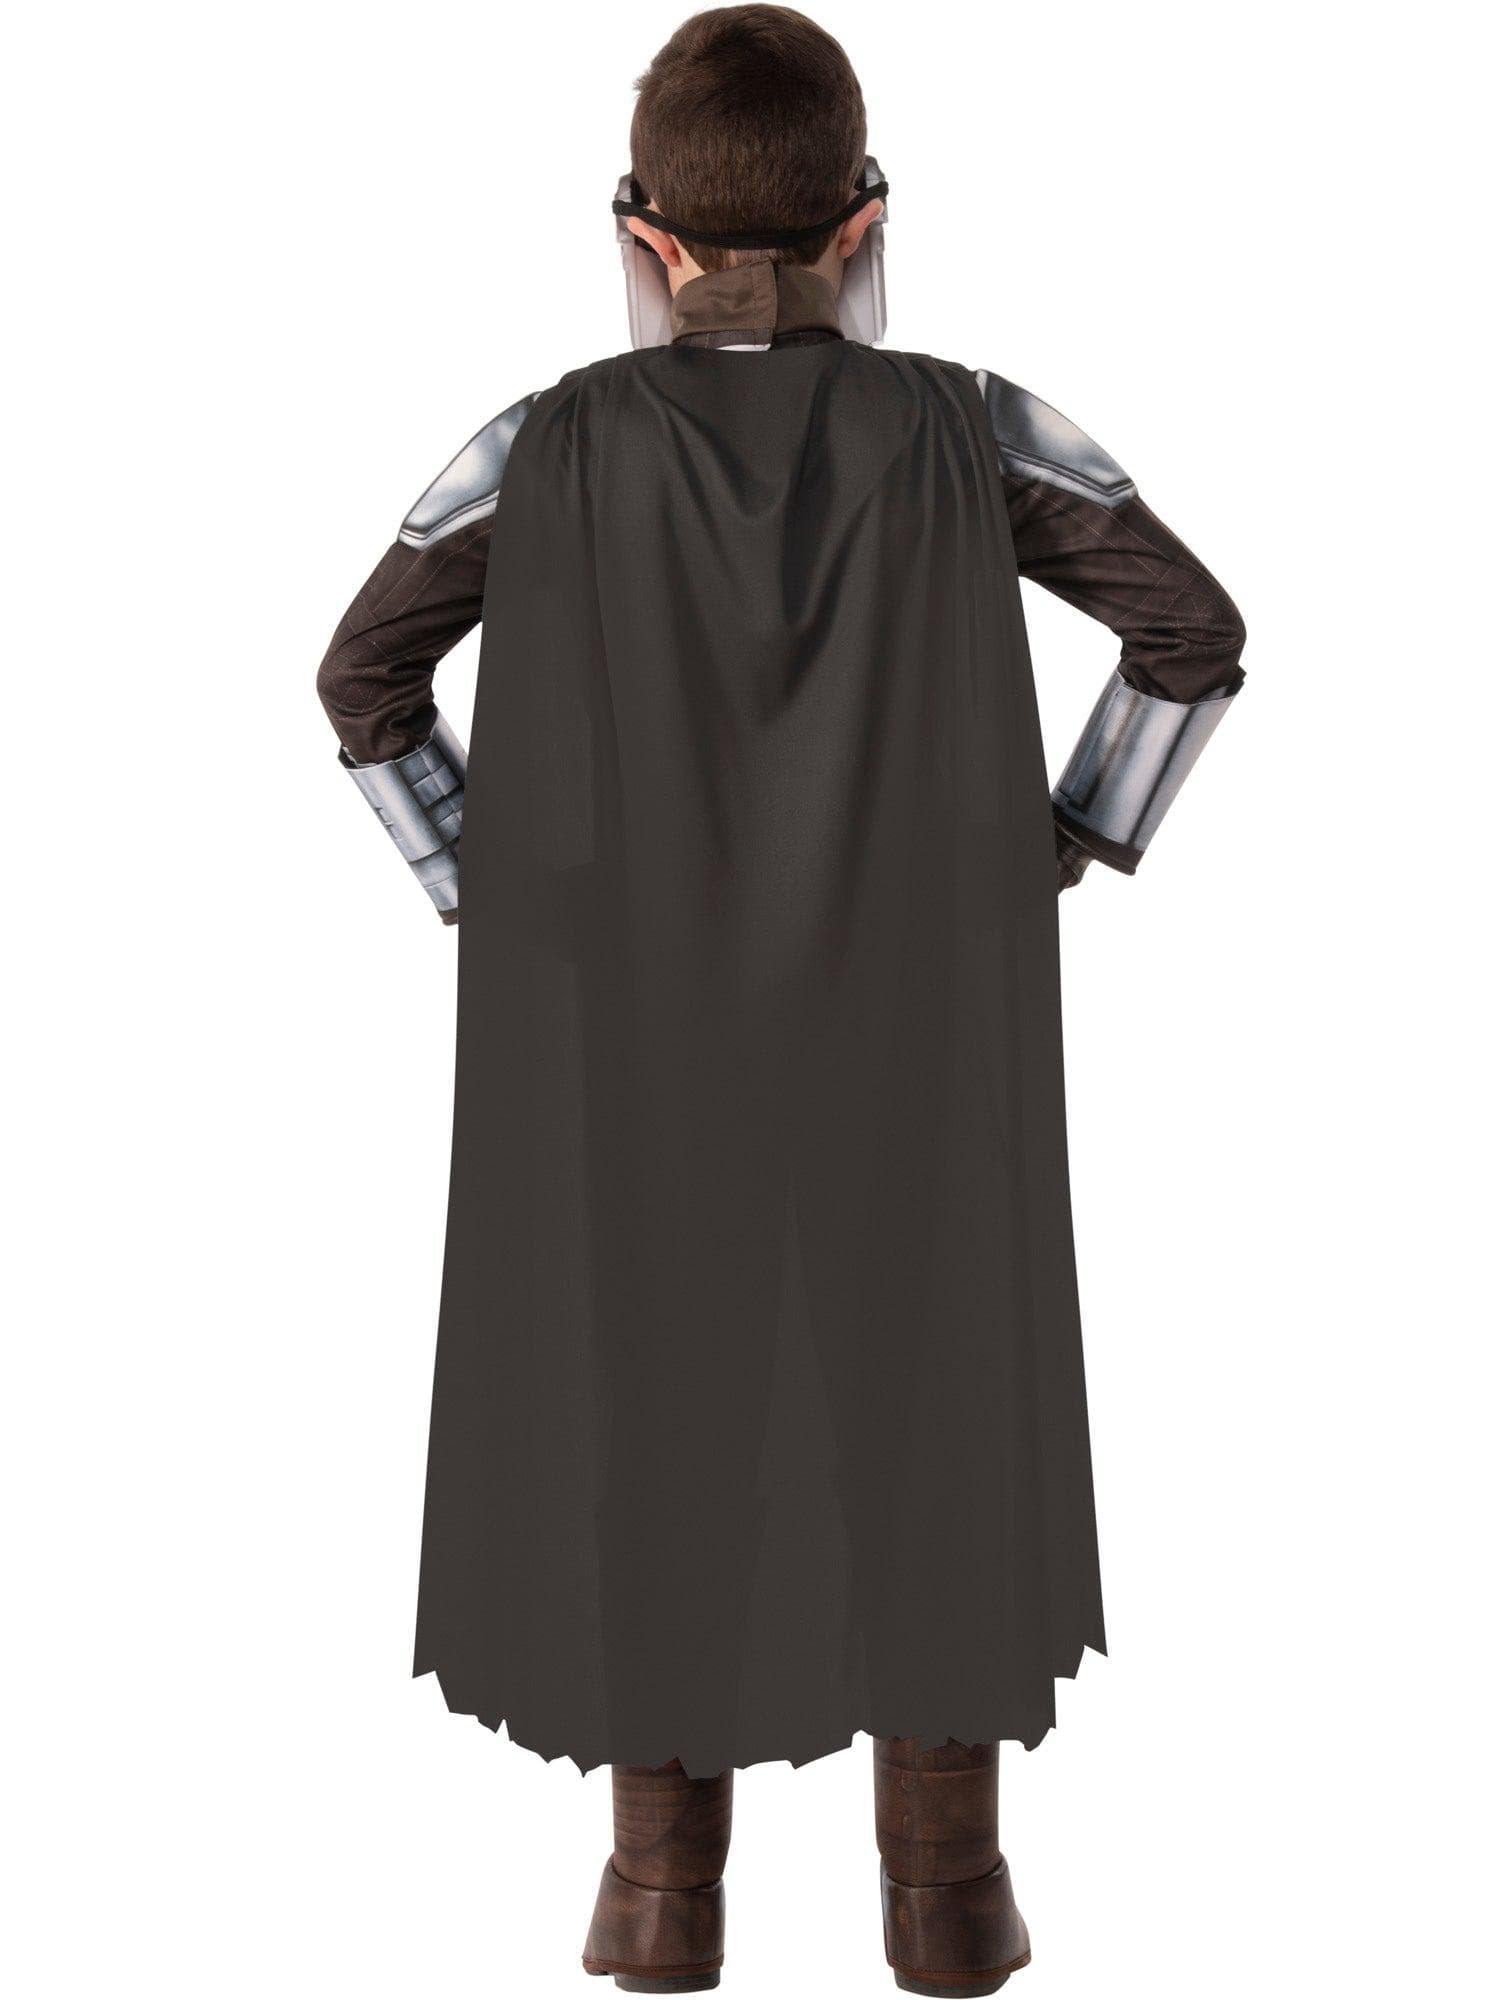 Mandalorian Child Costume - costumes.com